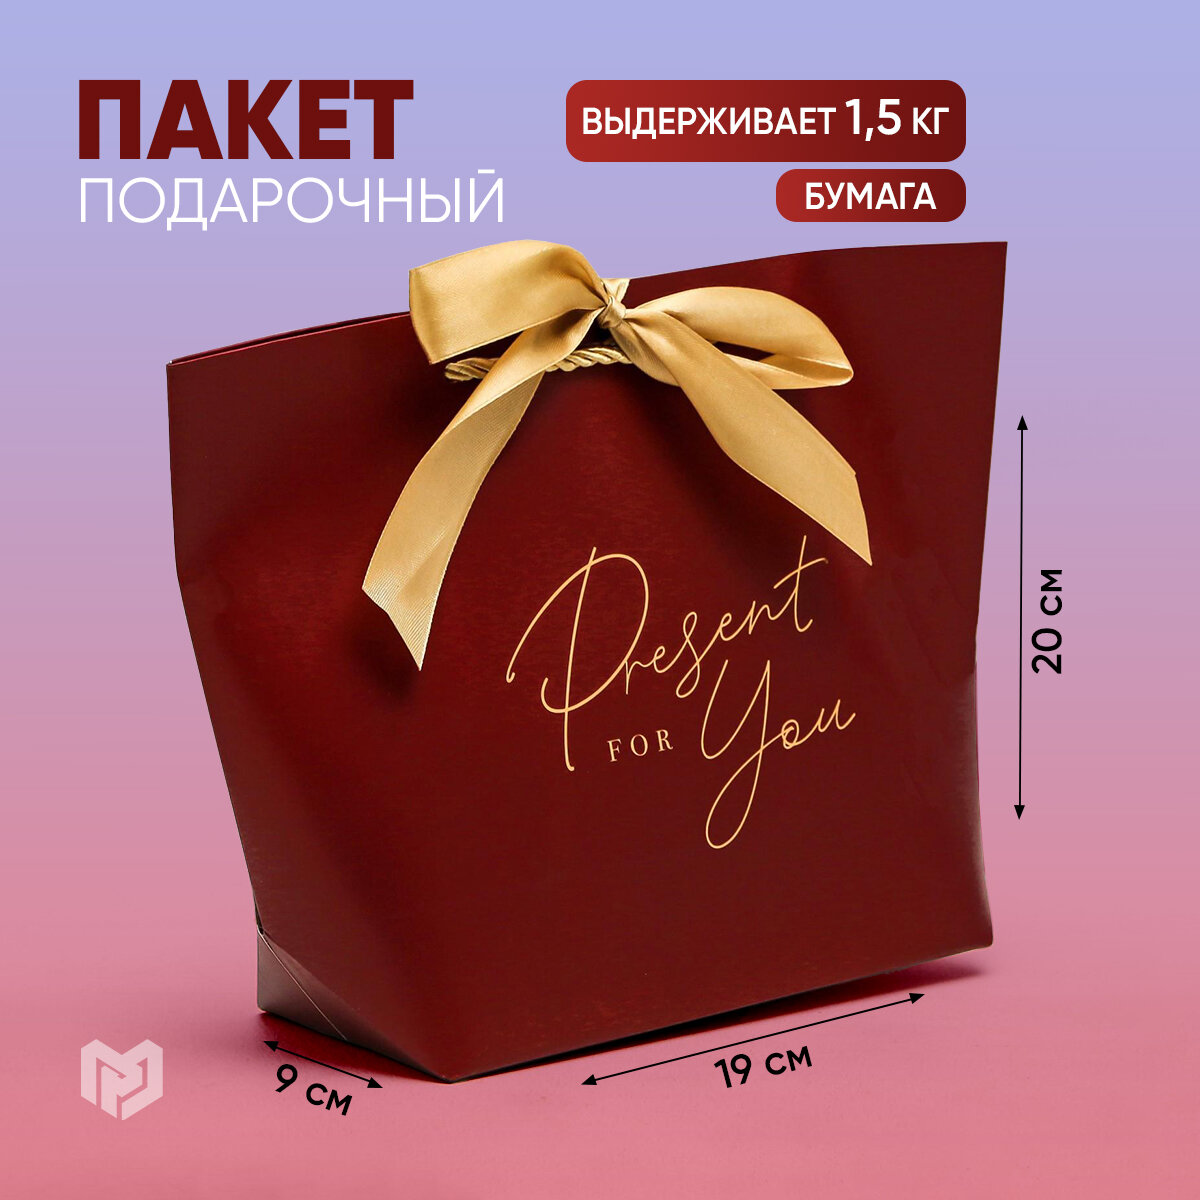 Пакет подарочный "Present for you", 19 х 20 х 9 см